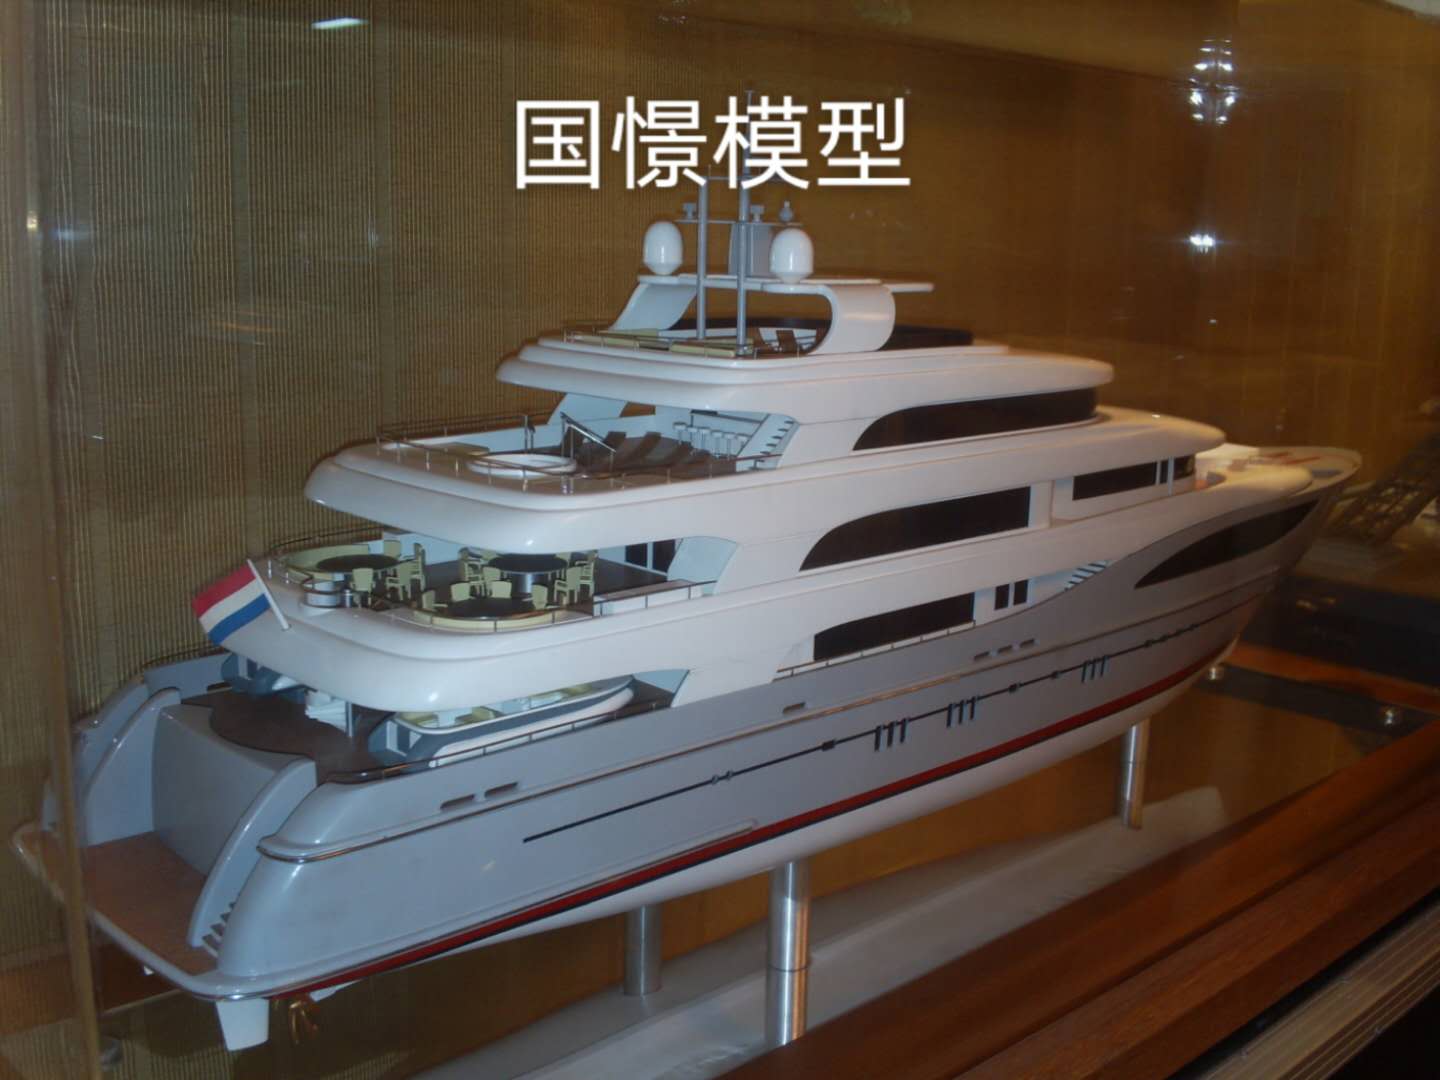 清河船舶模型